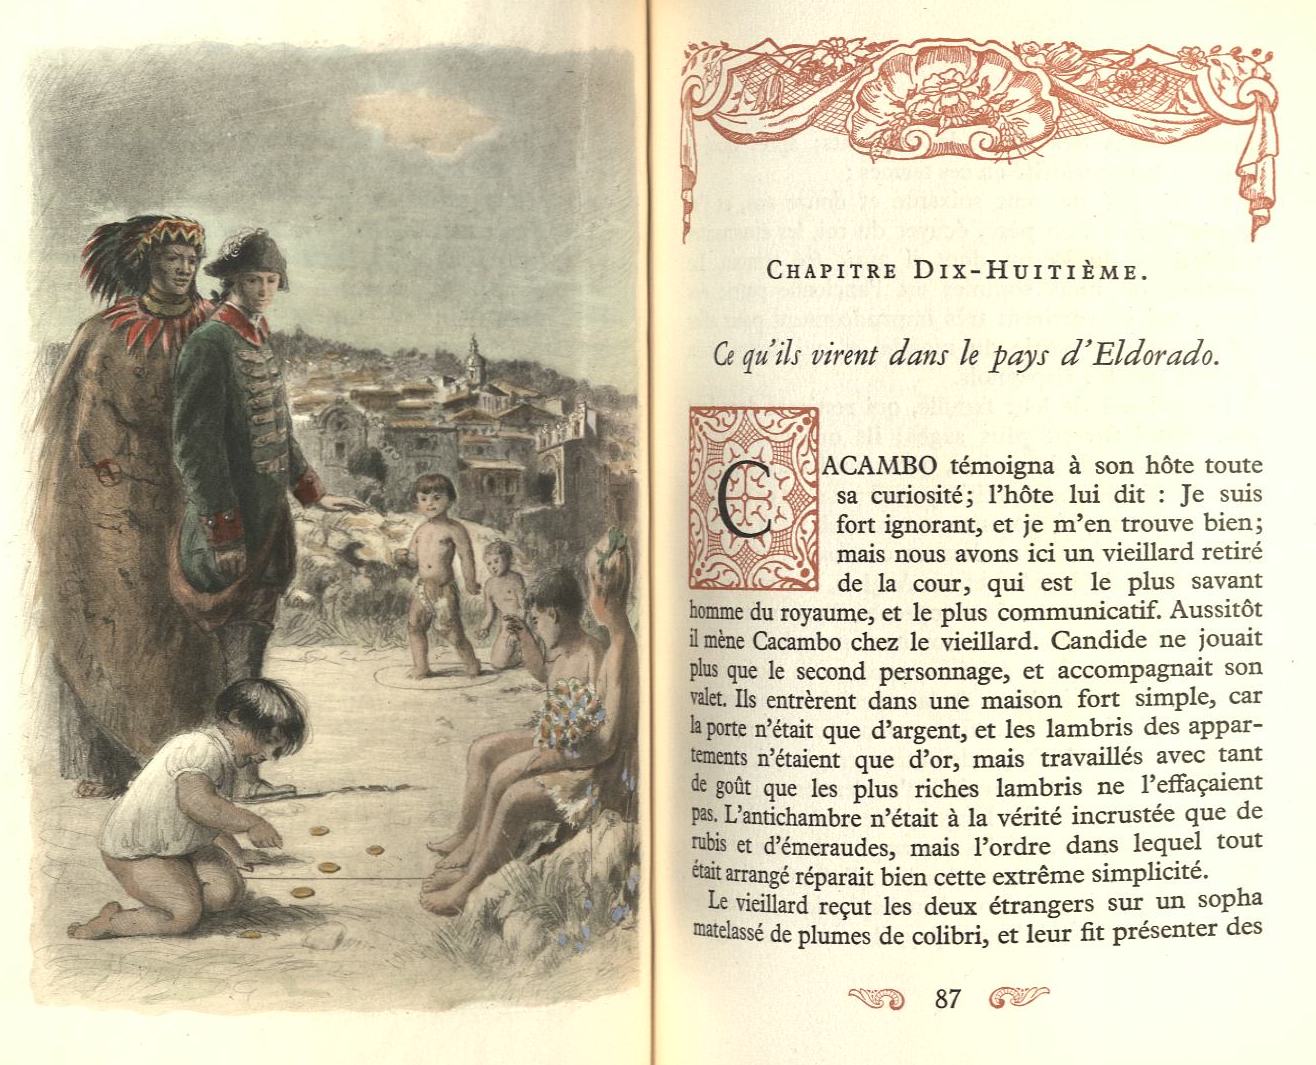 Voltaire, Candide. Publiziert in fünf Bänden von dem Pariser Verlag Arc-en-Ciel 1950, mit Illustrationen von Paul-Émile Becat